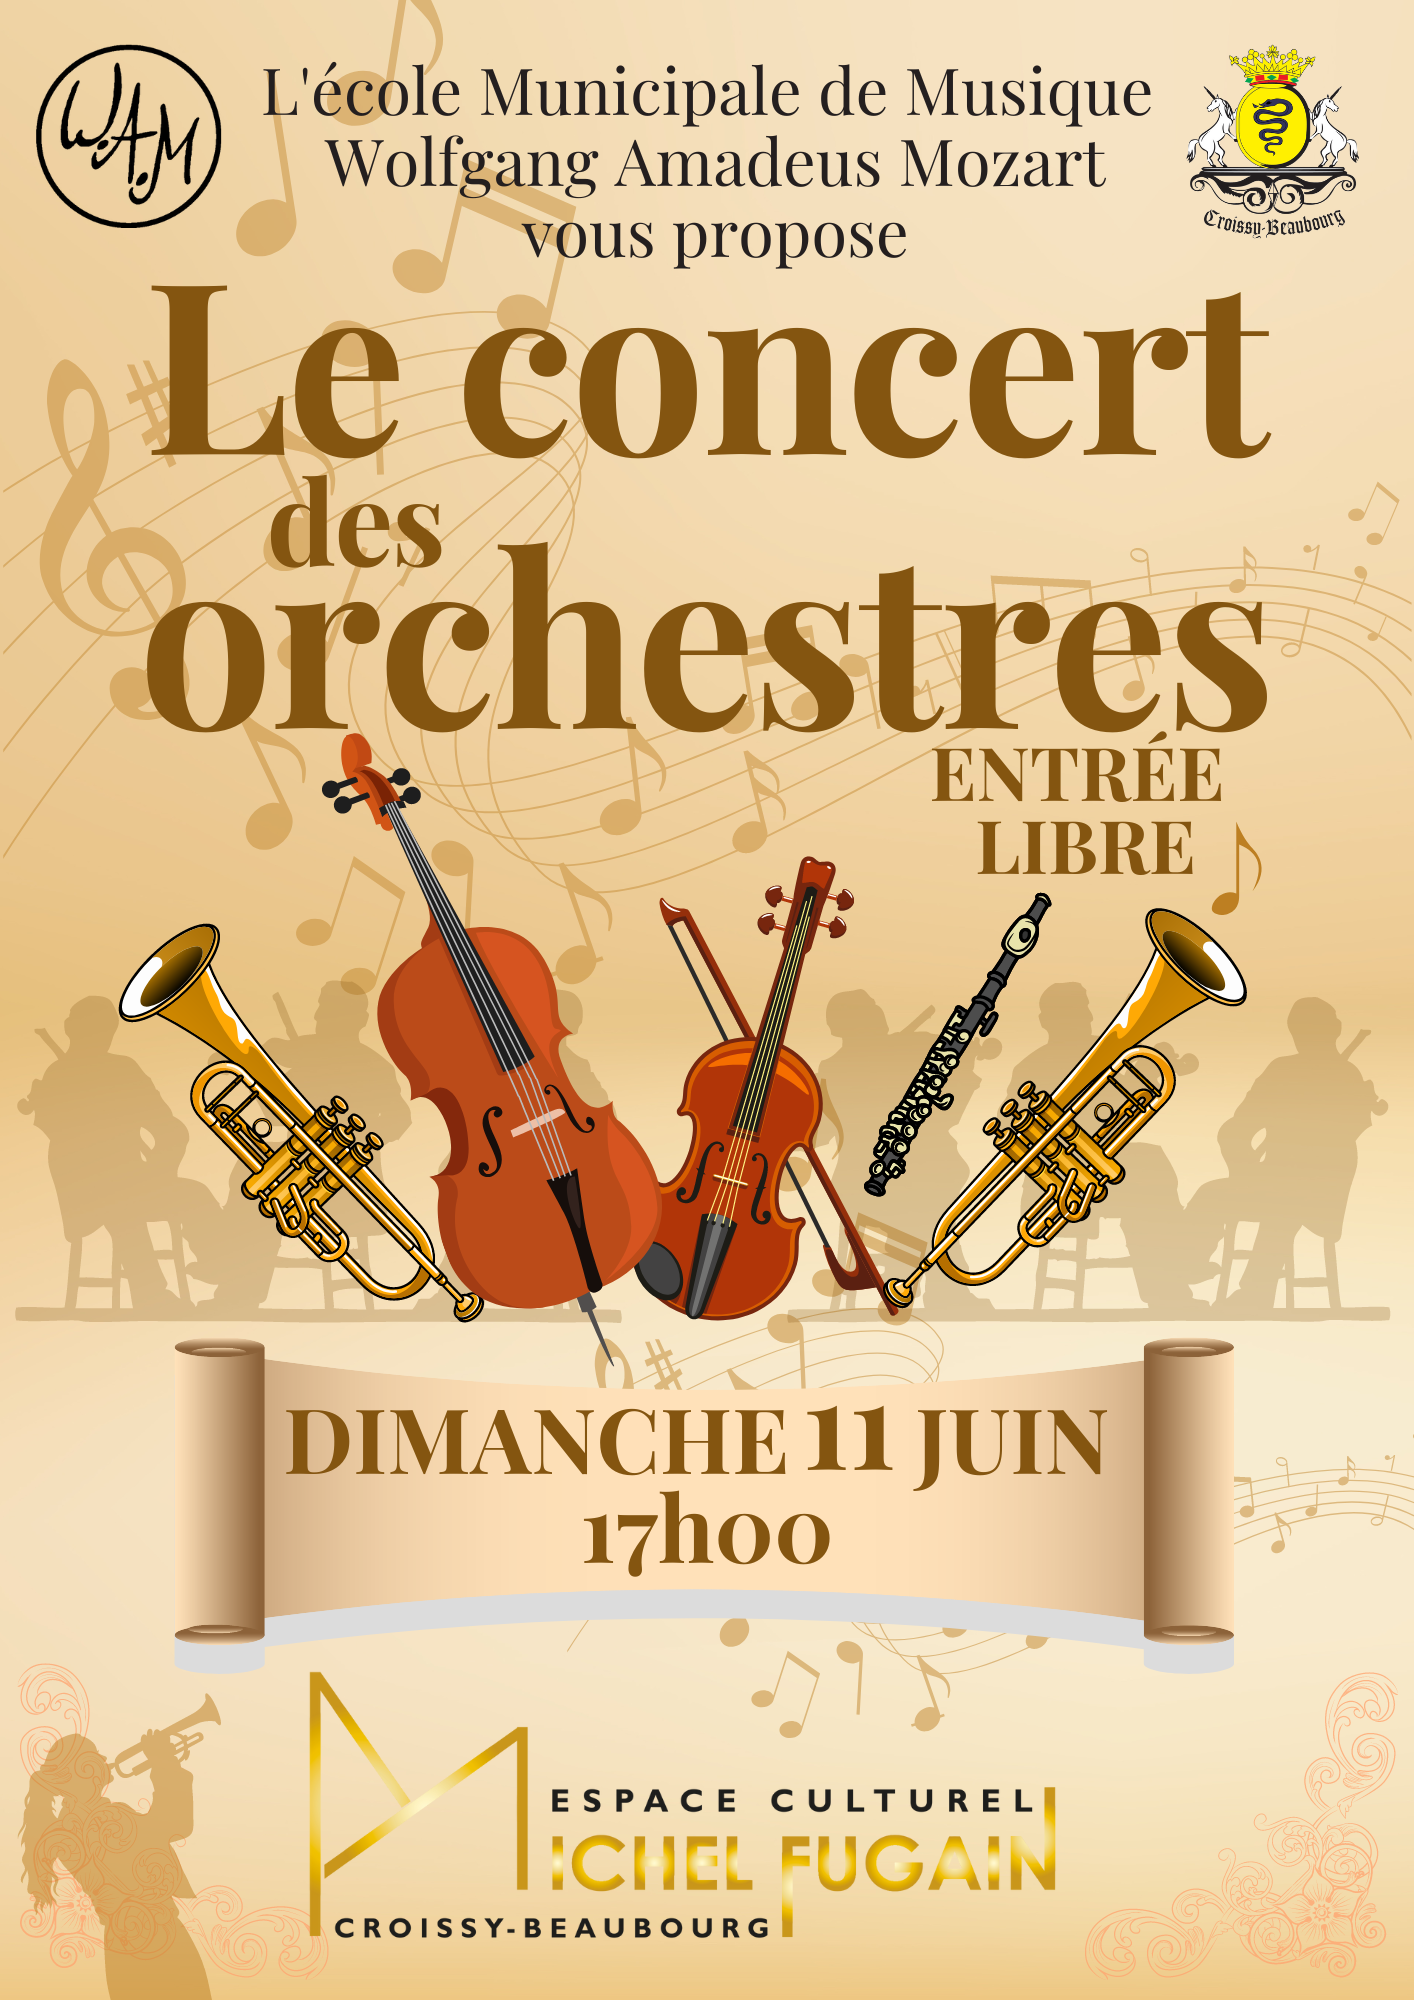 Concert des orchestres de l'école municipale de musique Wolfgang Amadeus Mozart le 11 juin à 17h